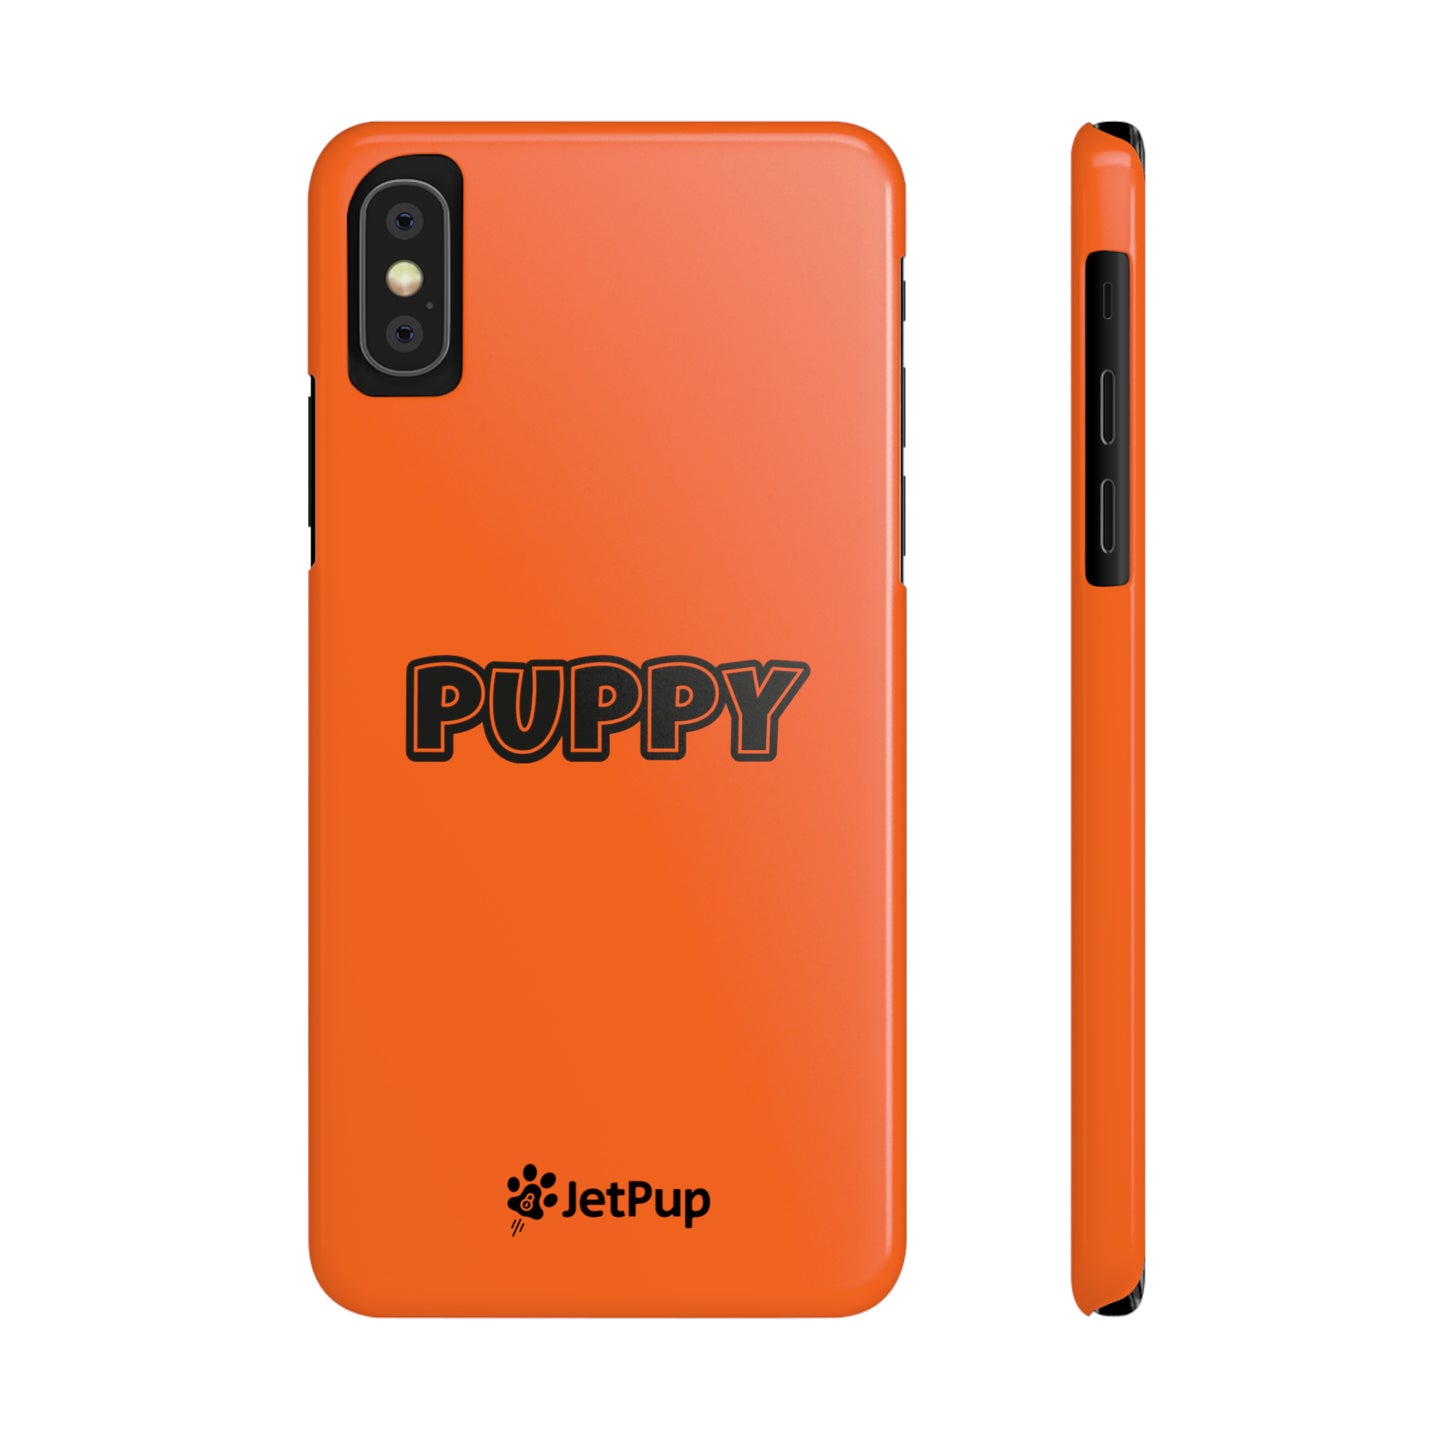 Puppy Slim iPhone Cases - Orange